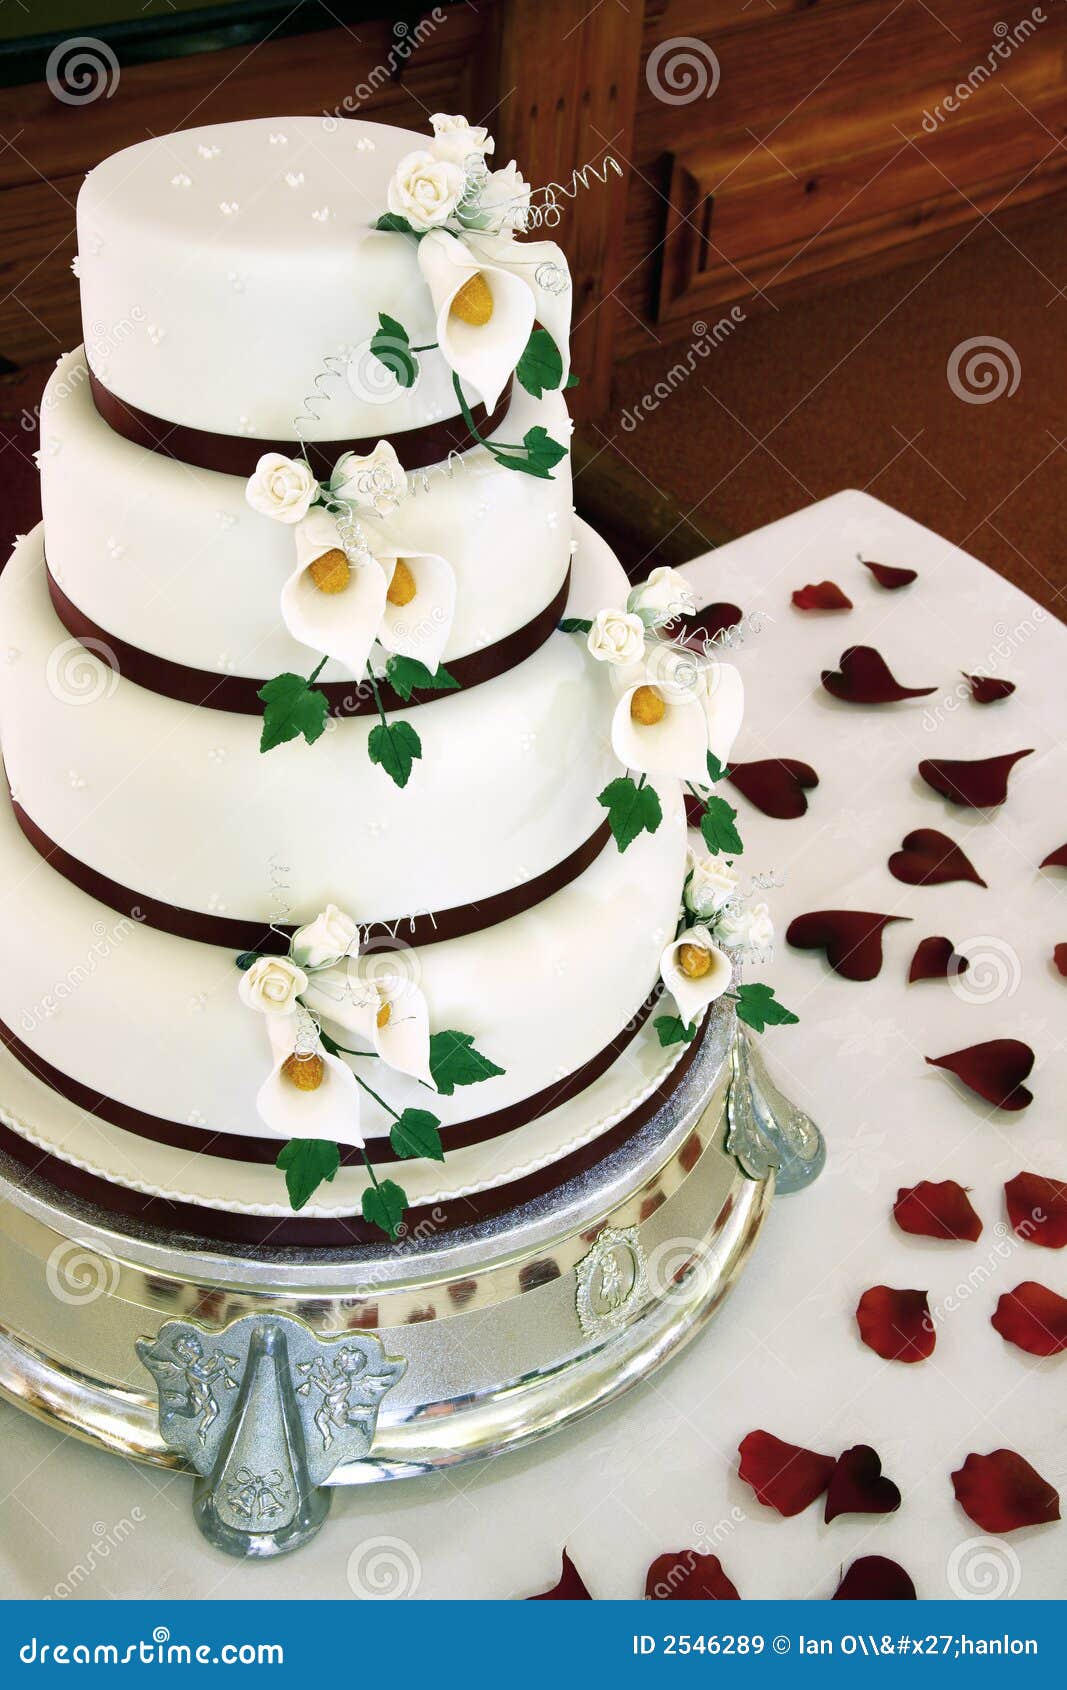 Beautiful wedding cake stock image. Image of burgundy - 2546289